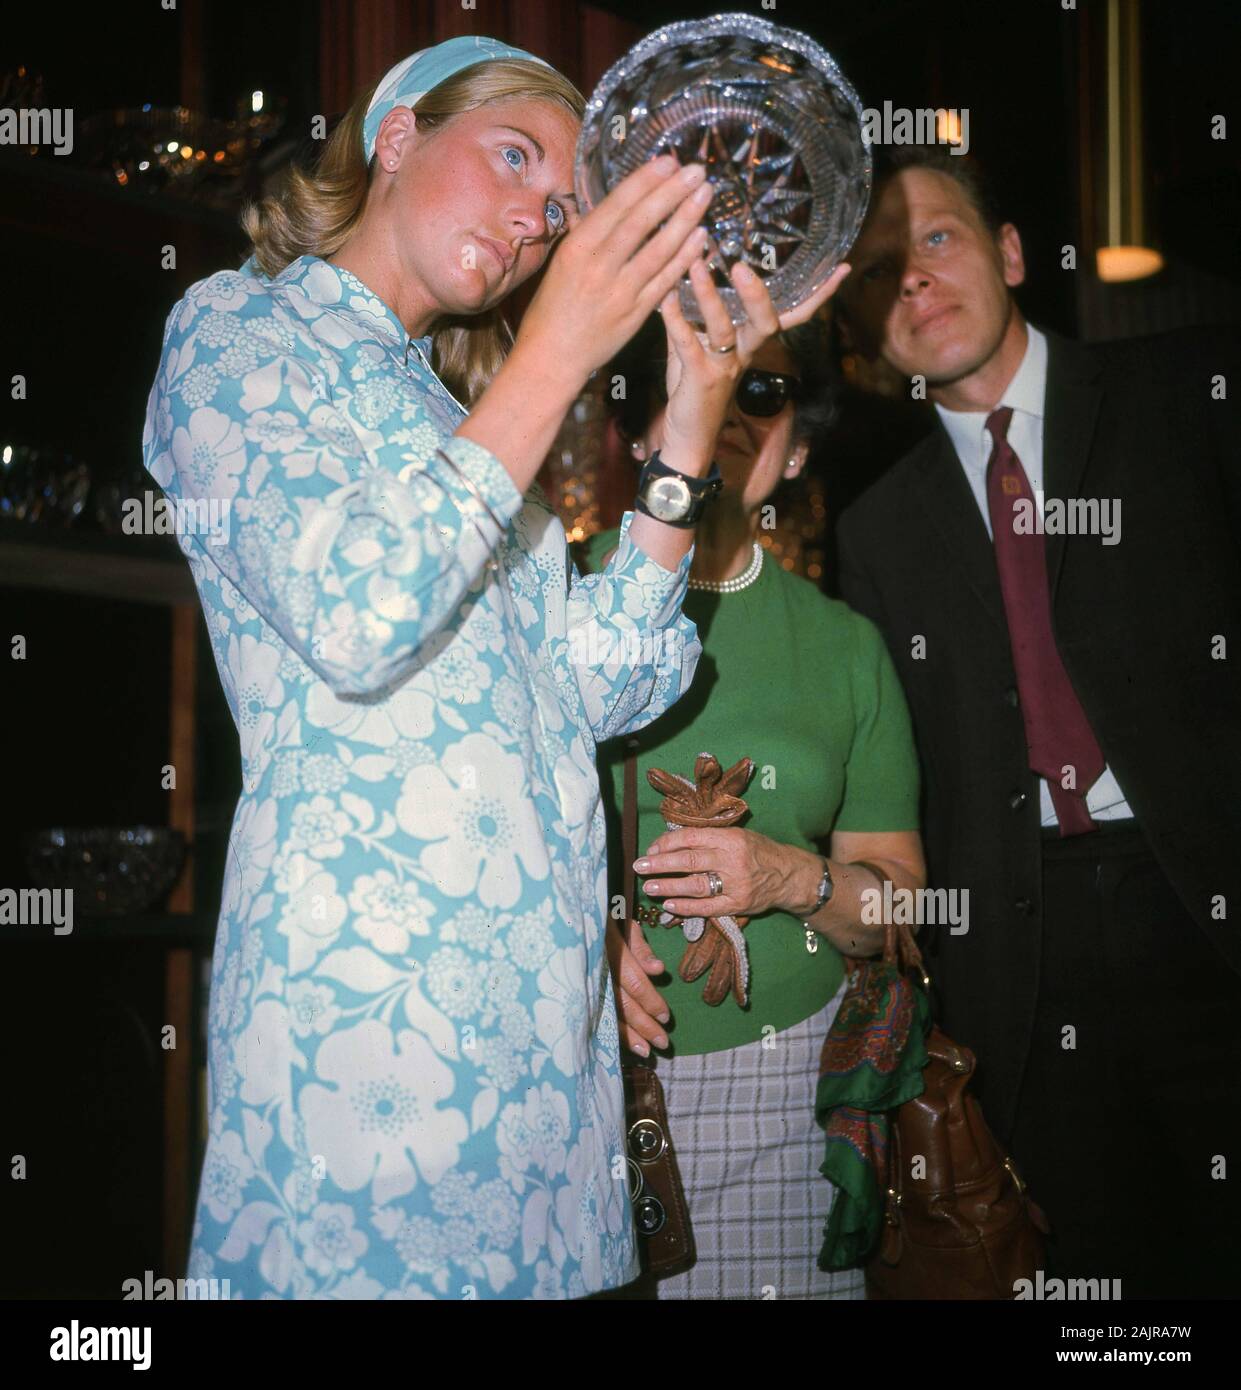 1960er Jahre, historisch, eine junge Dame in einem hellblauen Kleid mit Blumenmuster aus der Epoche, die eine neu hergestellte, geschnittene Glasschale studiert, England, Großbritannien. Stockfoto